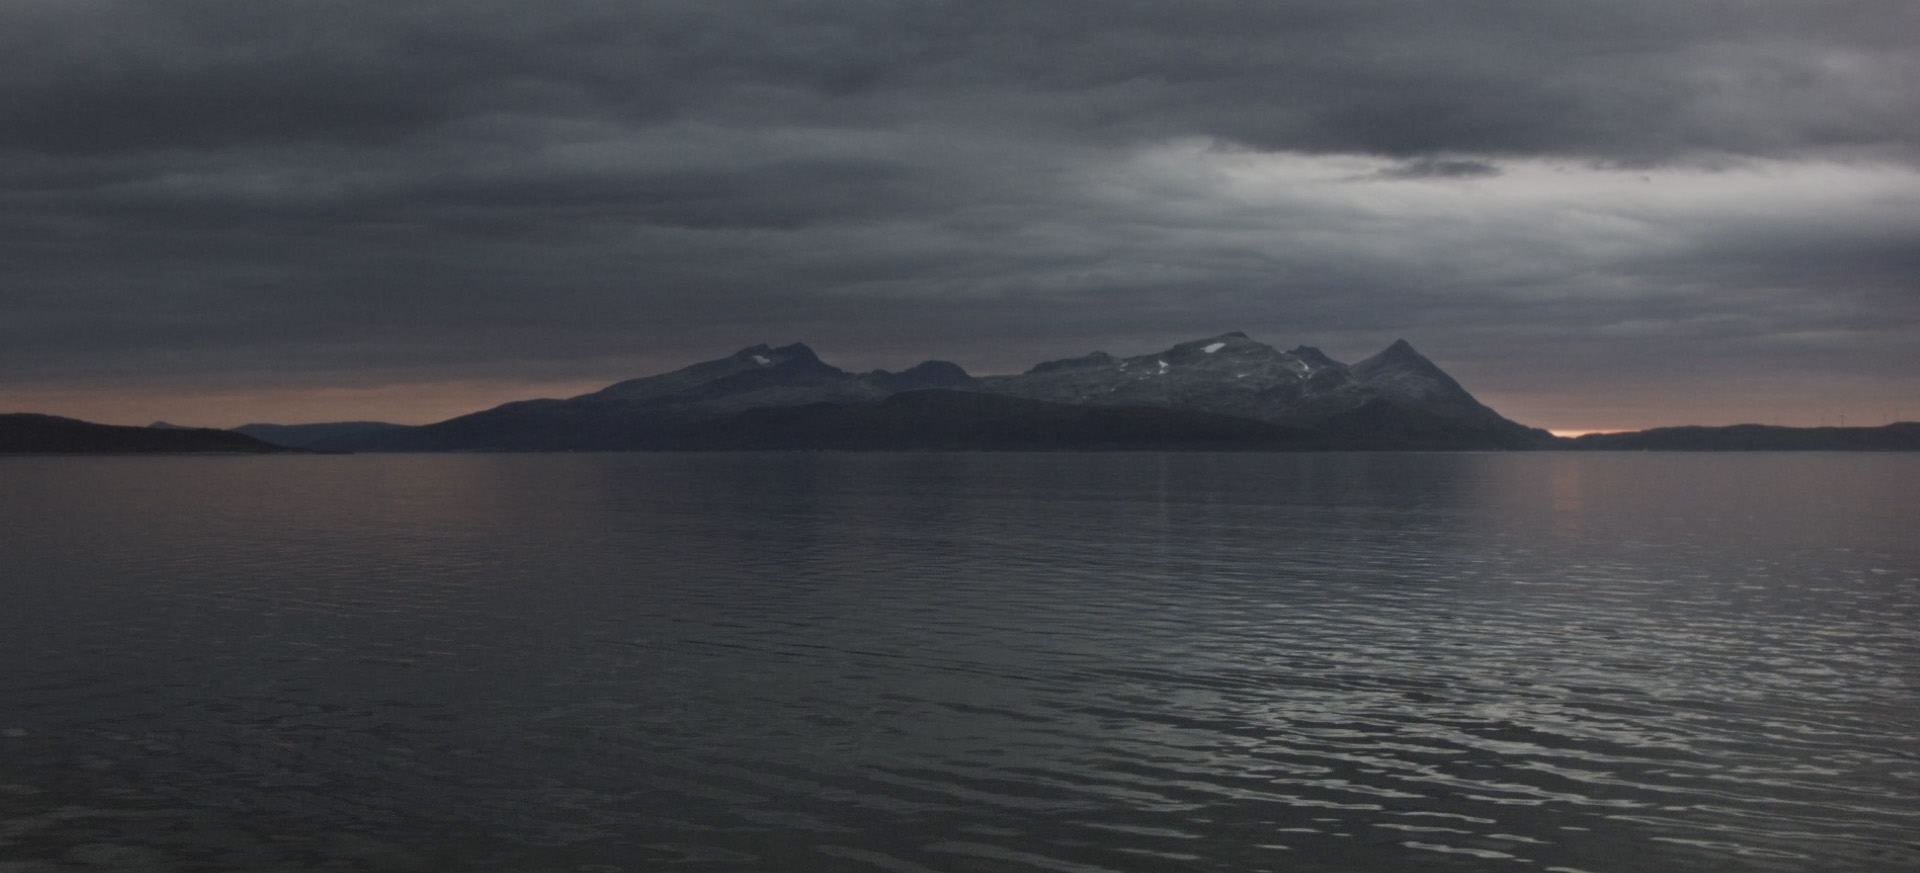 Mørke, capture d'écran du Film ©Alexandre Ries